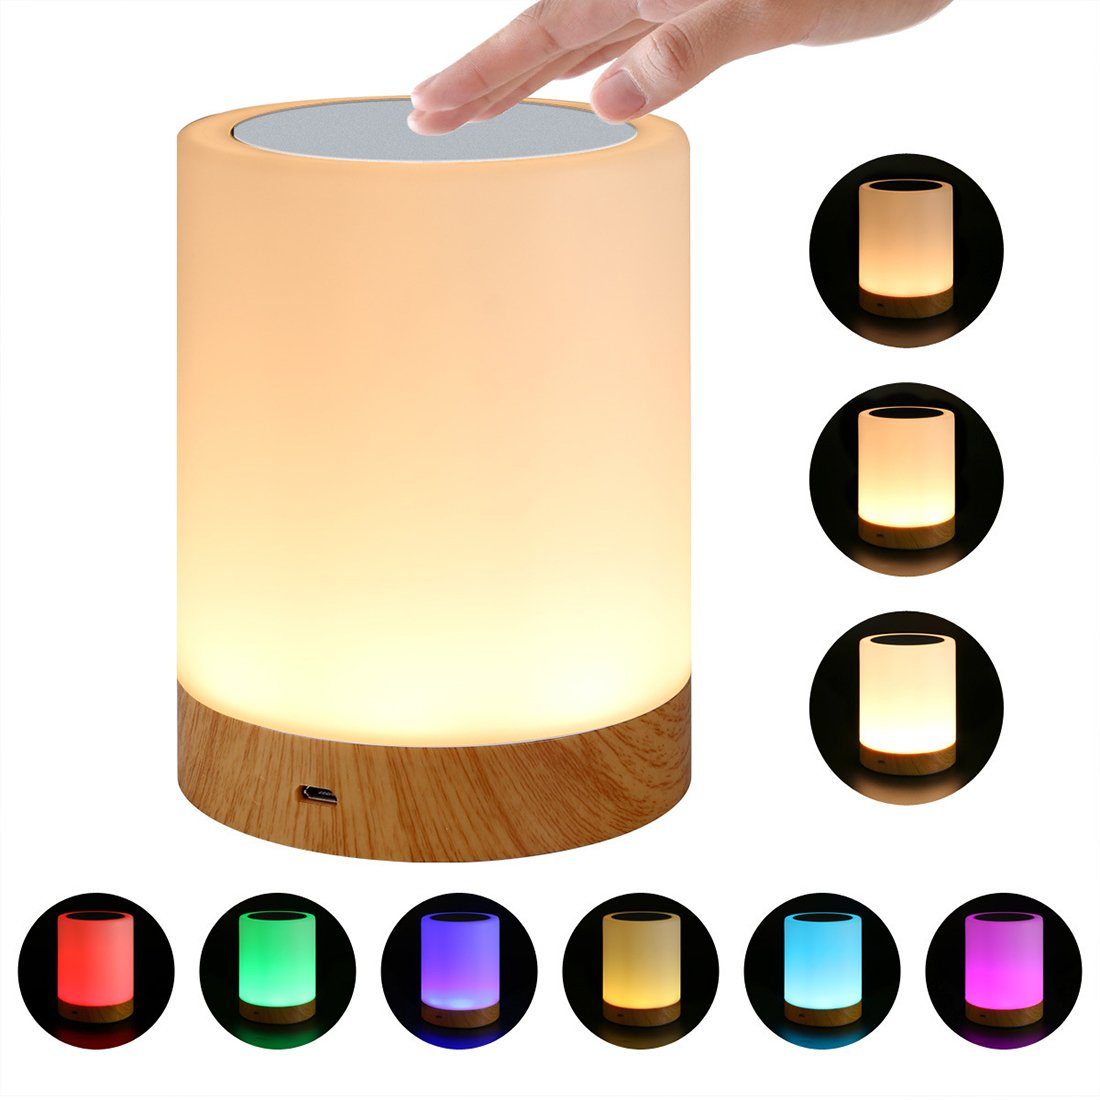 Haiaveng LED Nachttischlampe Nachttischlampe, LED Nachttischlampe Touch Dimmbar, Warmes Weiß, Holzmaserung Nachtlicht USB Aufladbar für Schlafzimmer Wohnzimmer